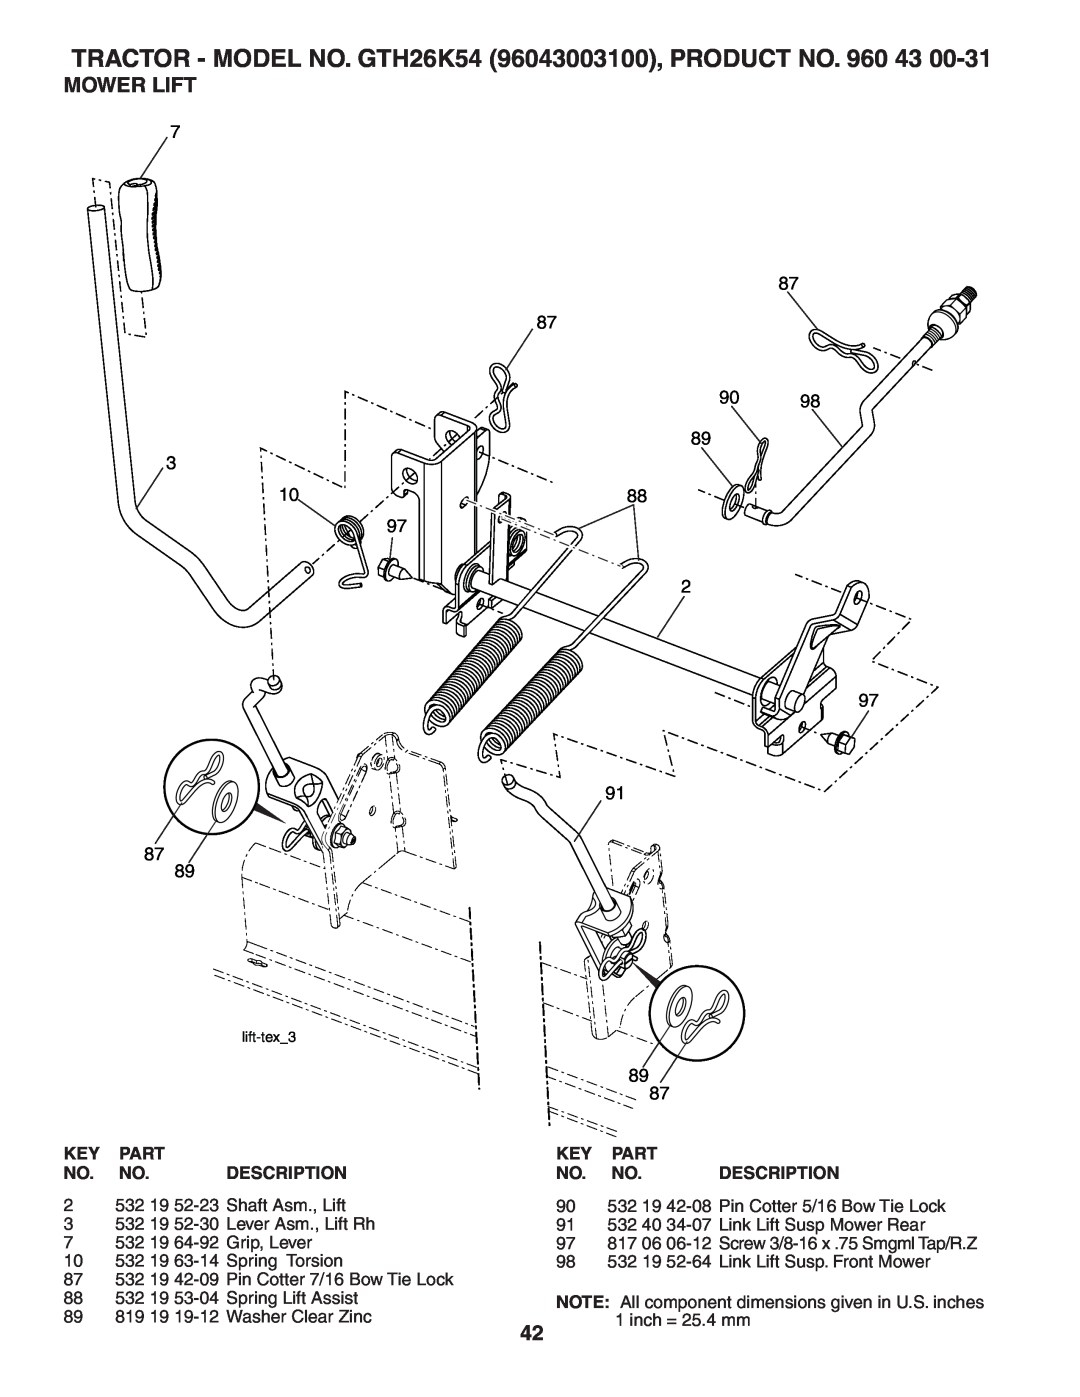 Husqvarna owner manual Mower Lift, TRACTOR - MODEL NO. GTH26K54 96043003100, PRODUCT NO. 960 43, lift-tex3 